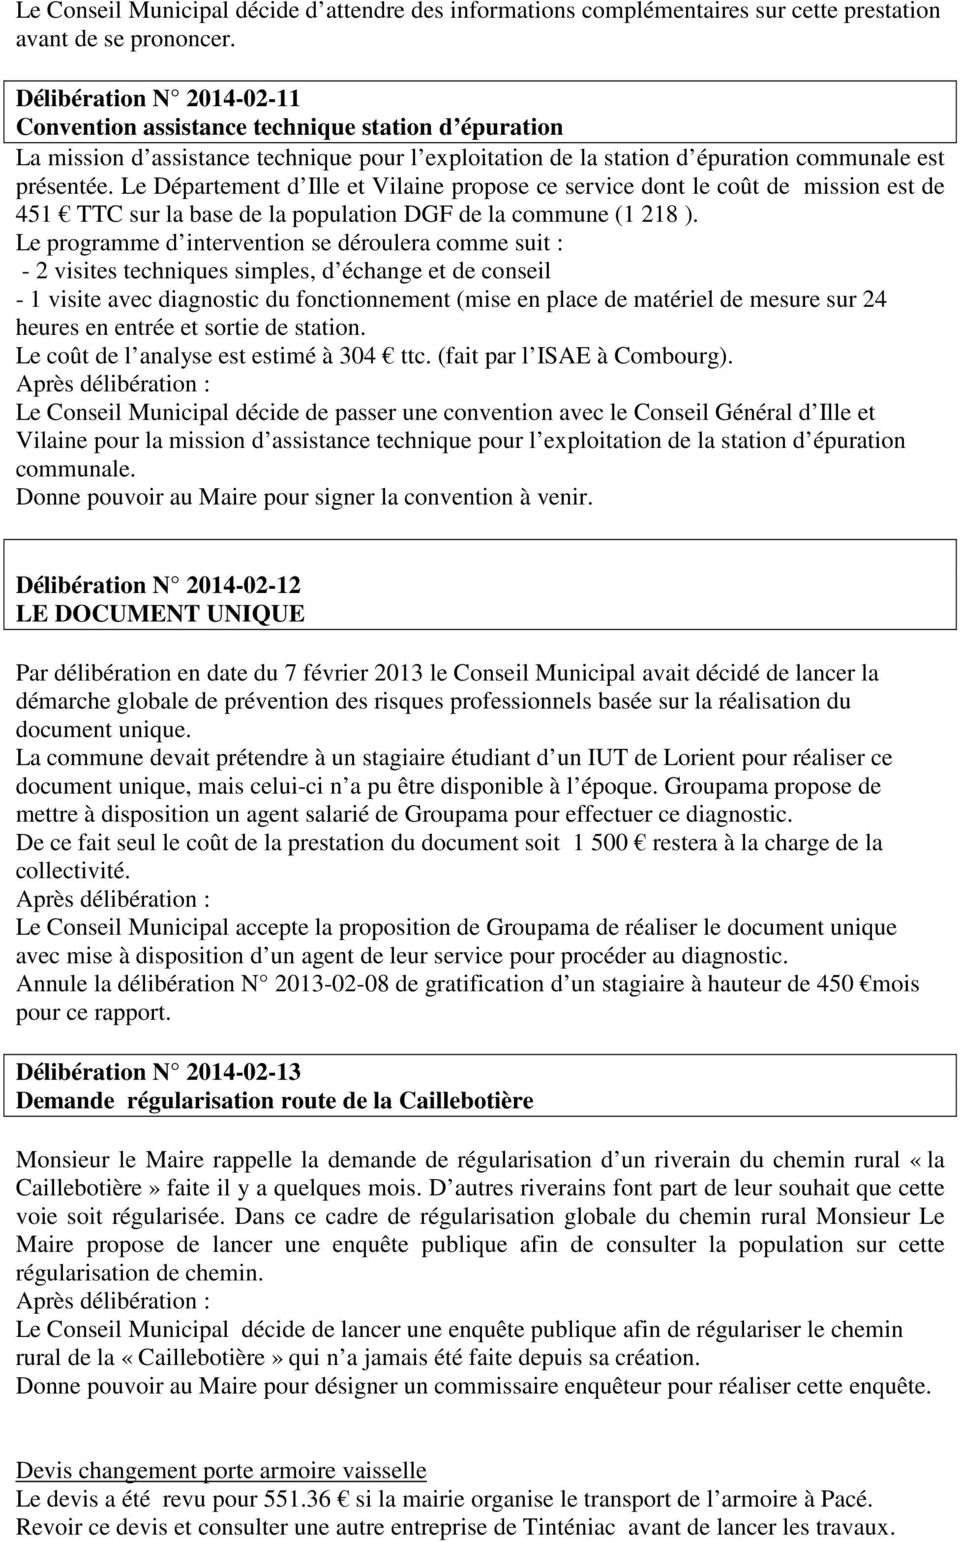 Le Département d Ille et Vilaine propose ce service dont le coût de mission est de 451 TTC sur la base de la population DGF de la commune (1 218 ).